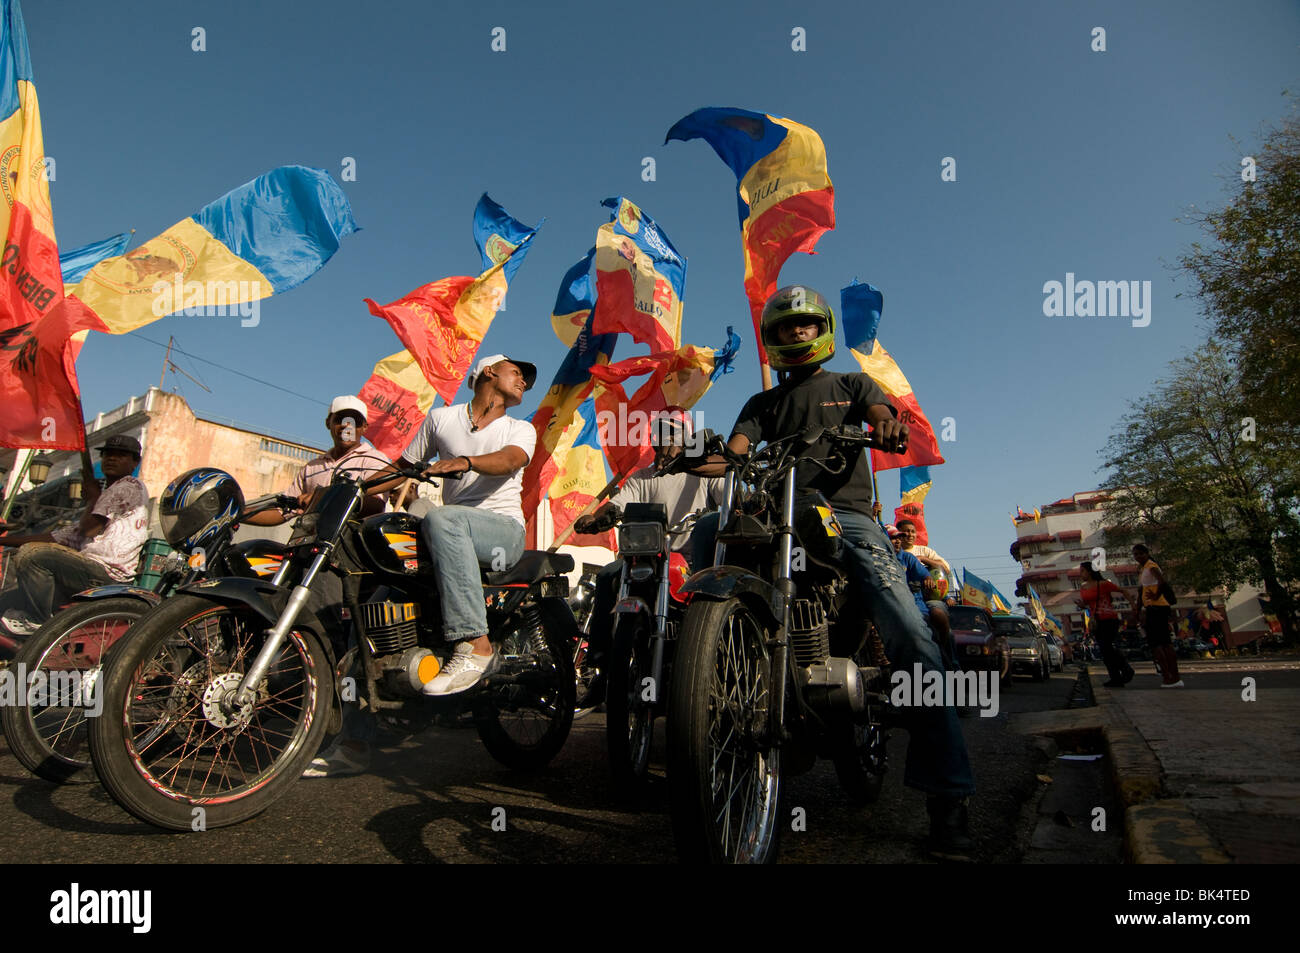 Les motocyclistes avec drapeaux nationaux à un rassemblement politique au centre-ville de Santo Domingo République Dominicaine Banque D'Images